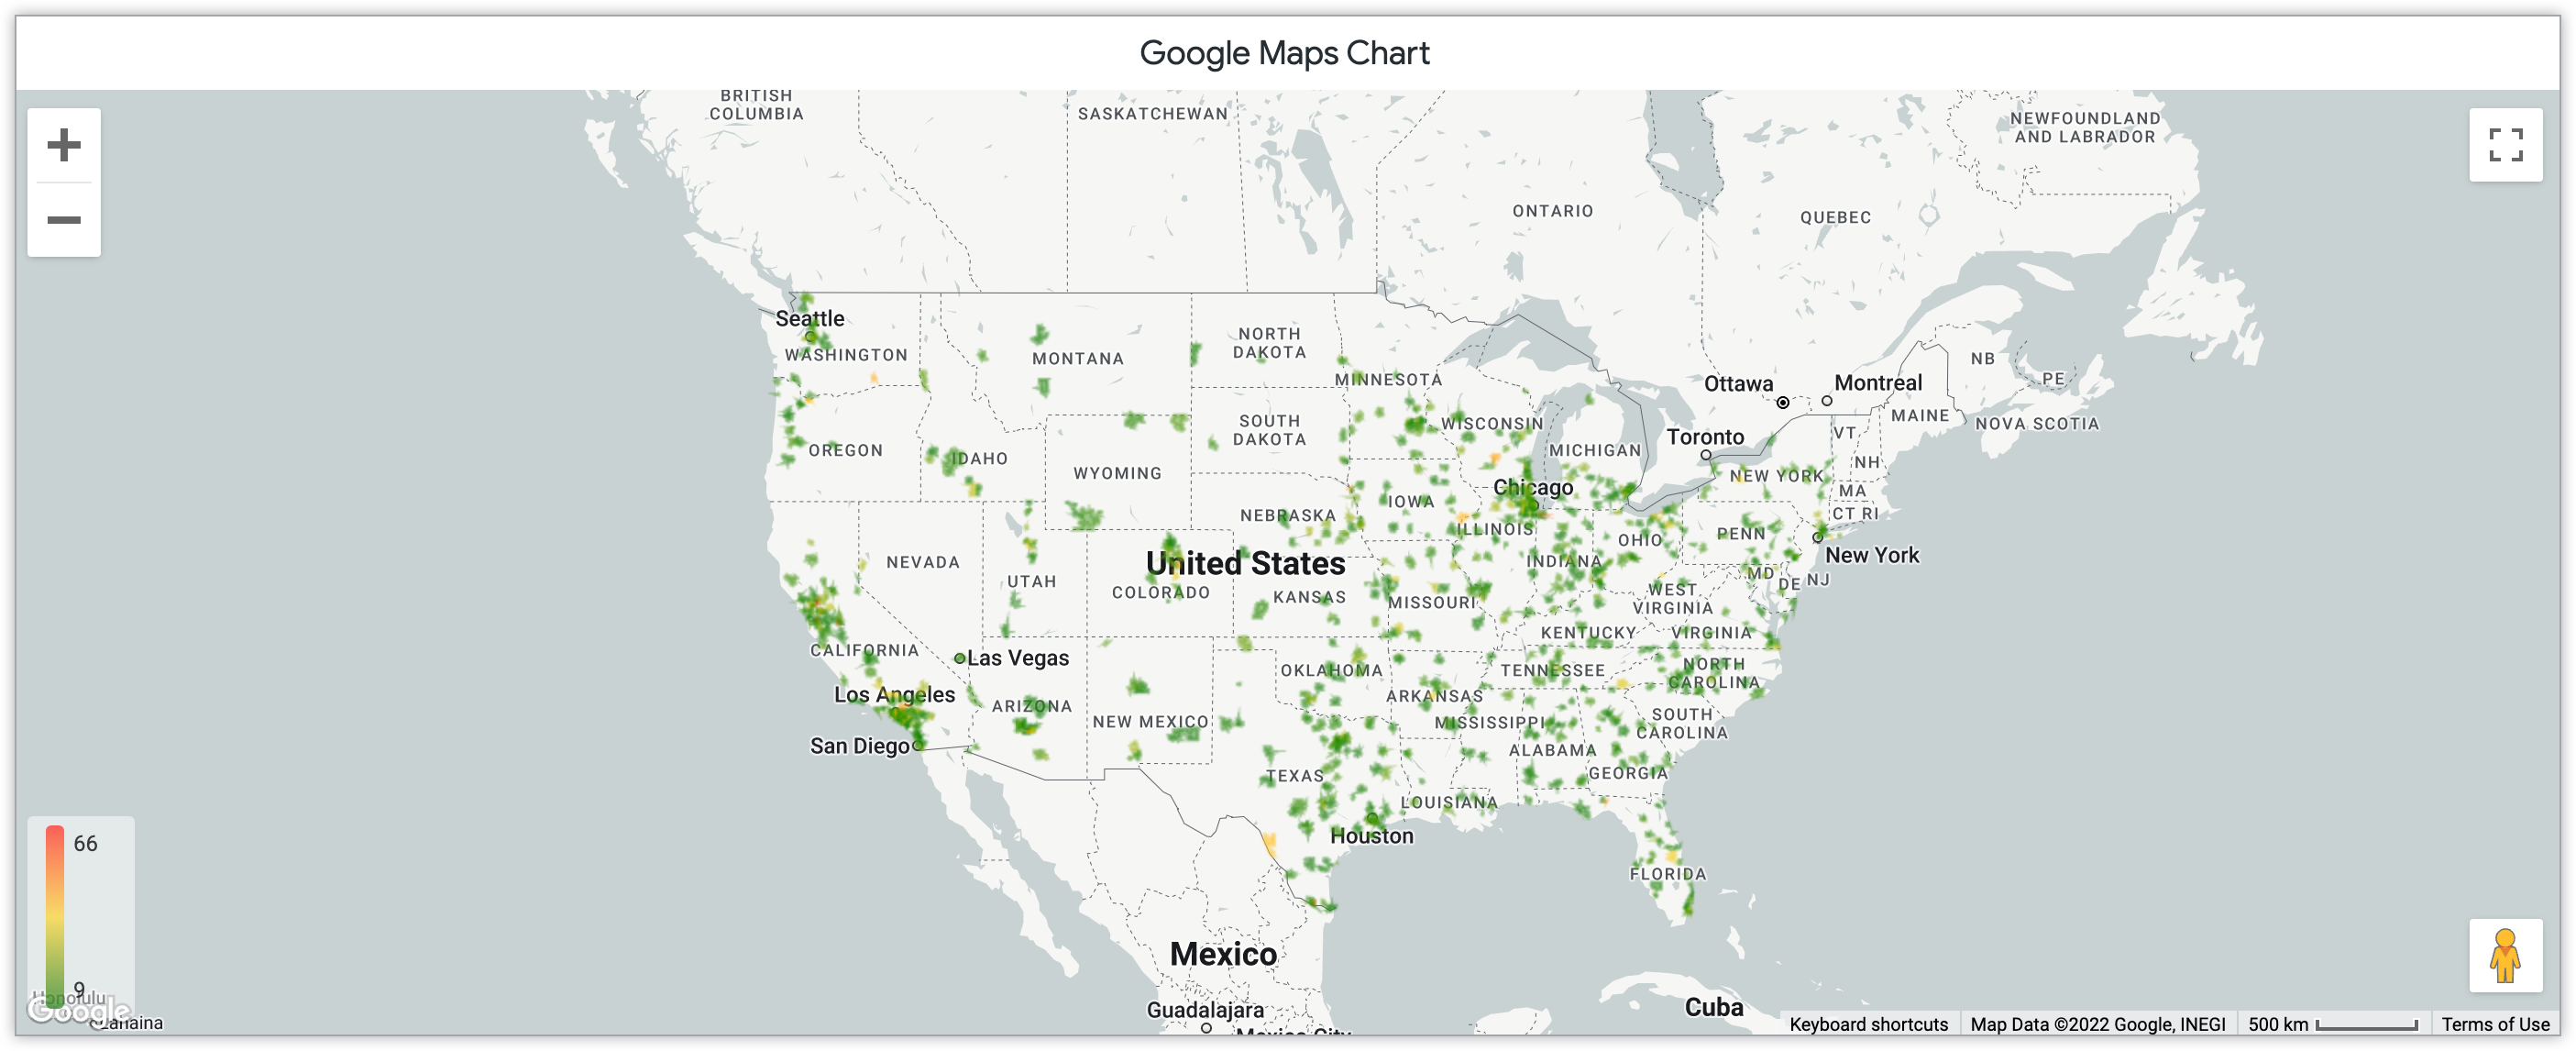 Gráfico de mapa de calor de Google Maps que muestra la cantidad de productos vendidos por mes en códigos postales de Estados Unidos.